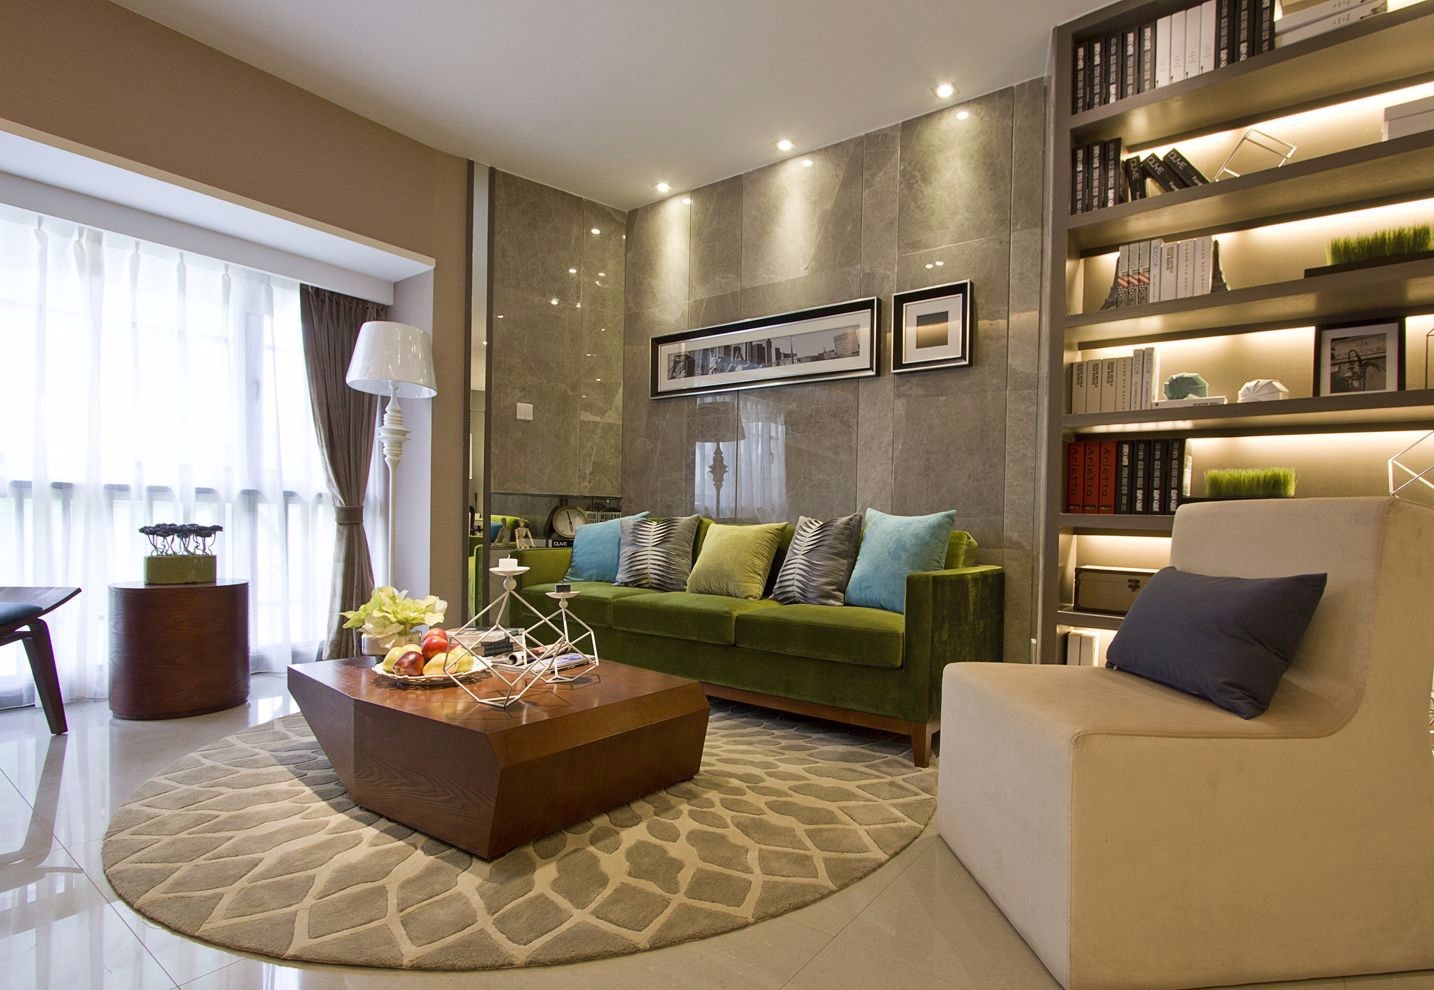 二居室装修,120平米装修,10-15万装修,现代简约风格,沙发背景墙,灰色